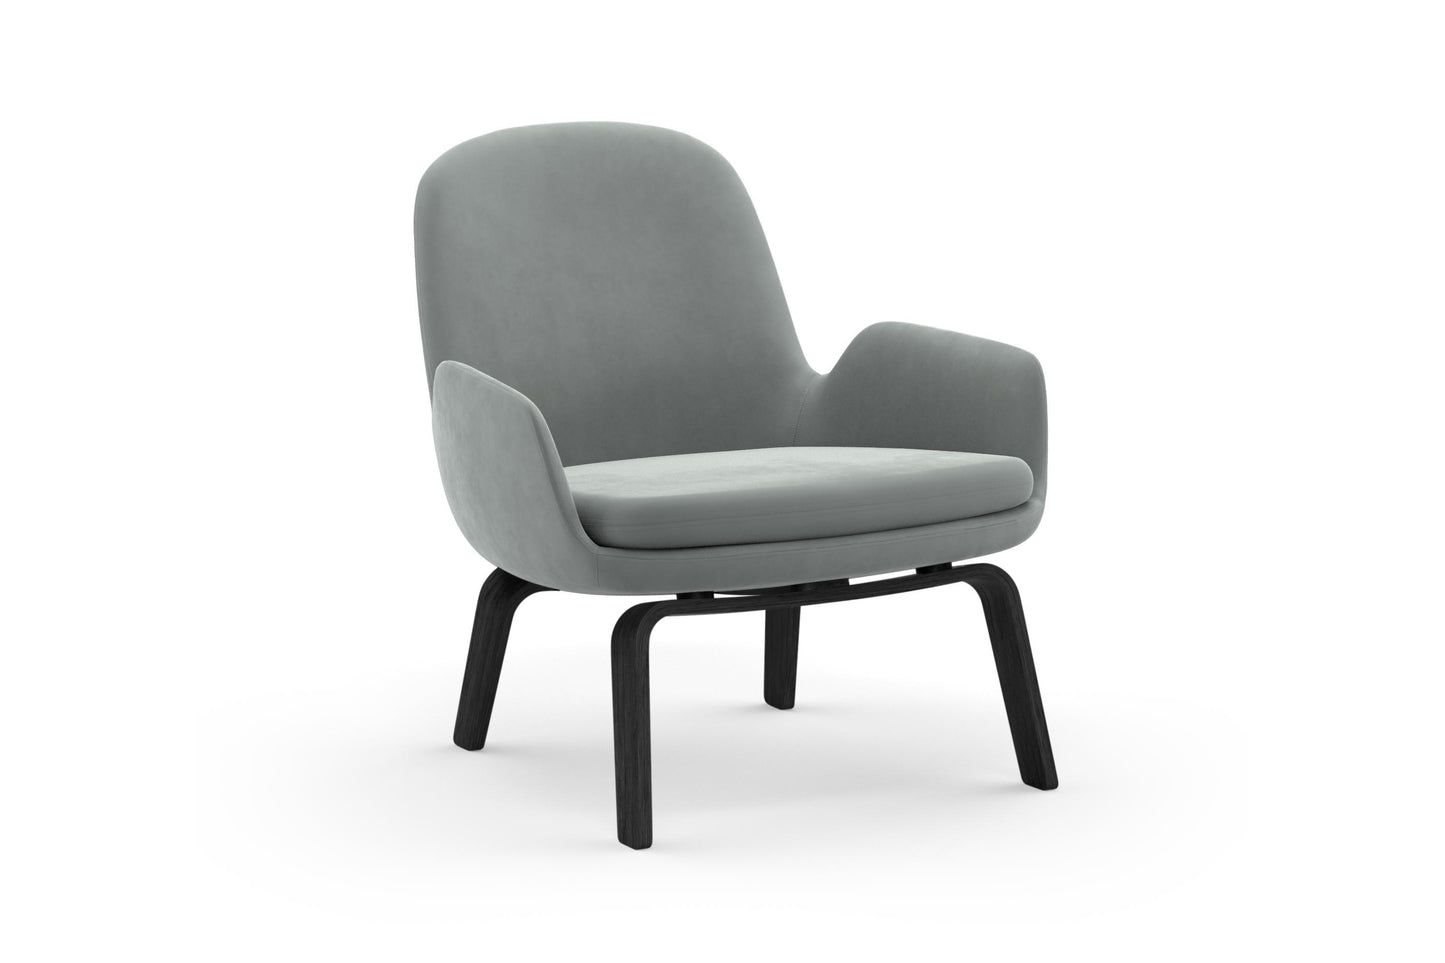 Era Lounge Chair Low, Black Oak by Normann Copenhagen